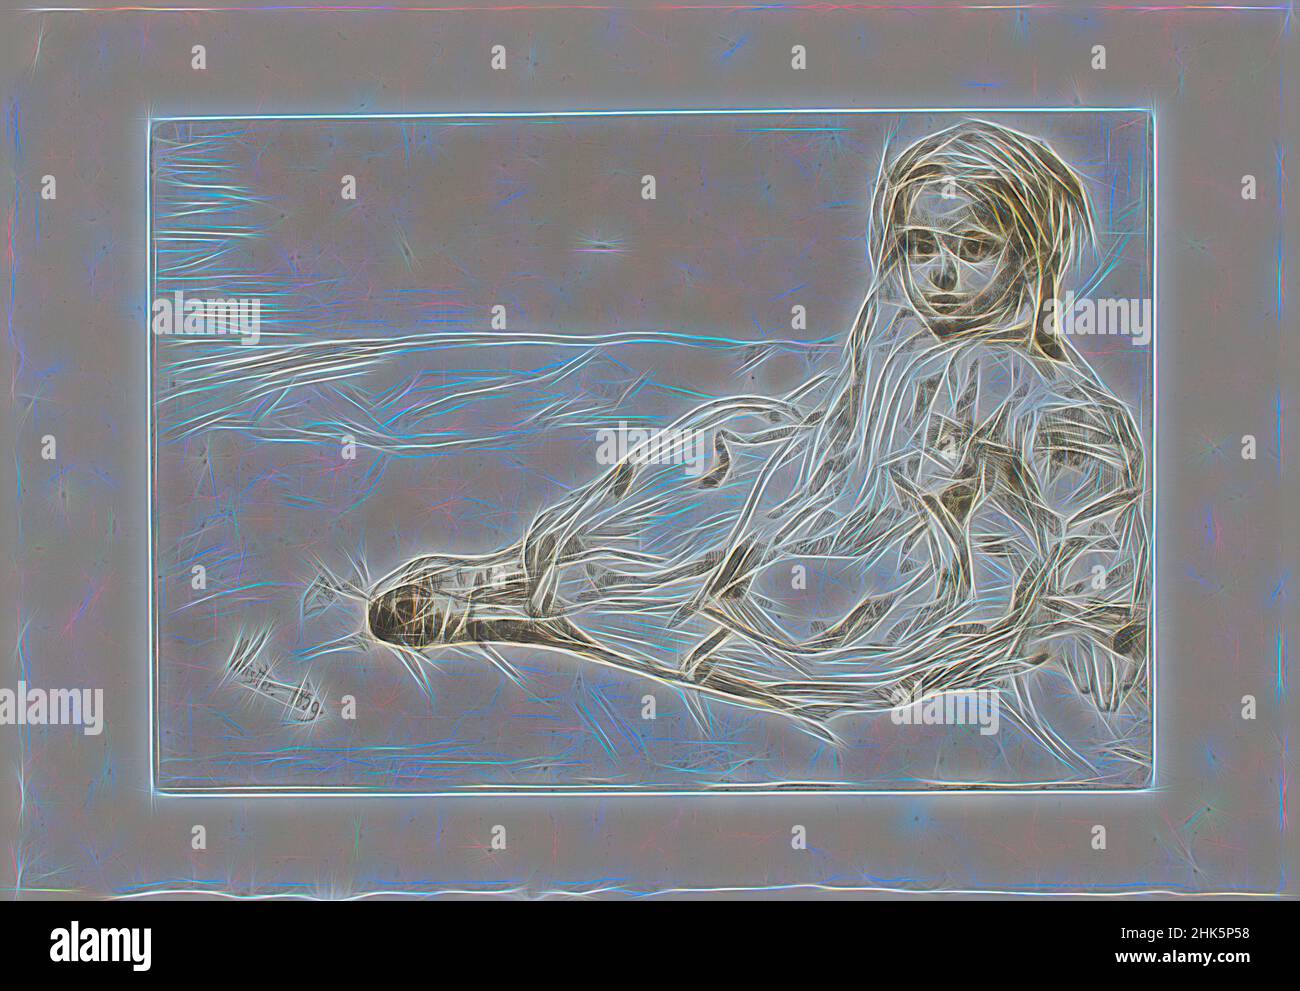 Inspiriert von Bibi Valentin, James A. McNeill Whistler, Amerikaner, 1834–1903, 1859, Radierung und Trockenpunkt auf Chine Collé, hergestellt in Paris, Frankreich, Europa, Bild: 6 Zoll x 8 7/8 Zoll (15,2 x 22,5 cm, neu erfunden von Artotop. Klassische Kunst neu erfunden mit einem modernen Twist. Design von warmen fröhlichen Leuchten der Helligkeit und Lichtstrahl Strahlkraft. Fotografie inspiriert von Surrealismus und Futurismus, umarmt dynamische Energie der modernen Technologie, Bewegung, Geschwindigkeit und Kultur zu revolutionieren Stockfoto